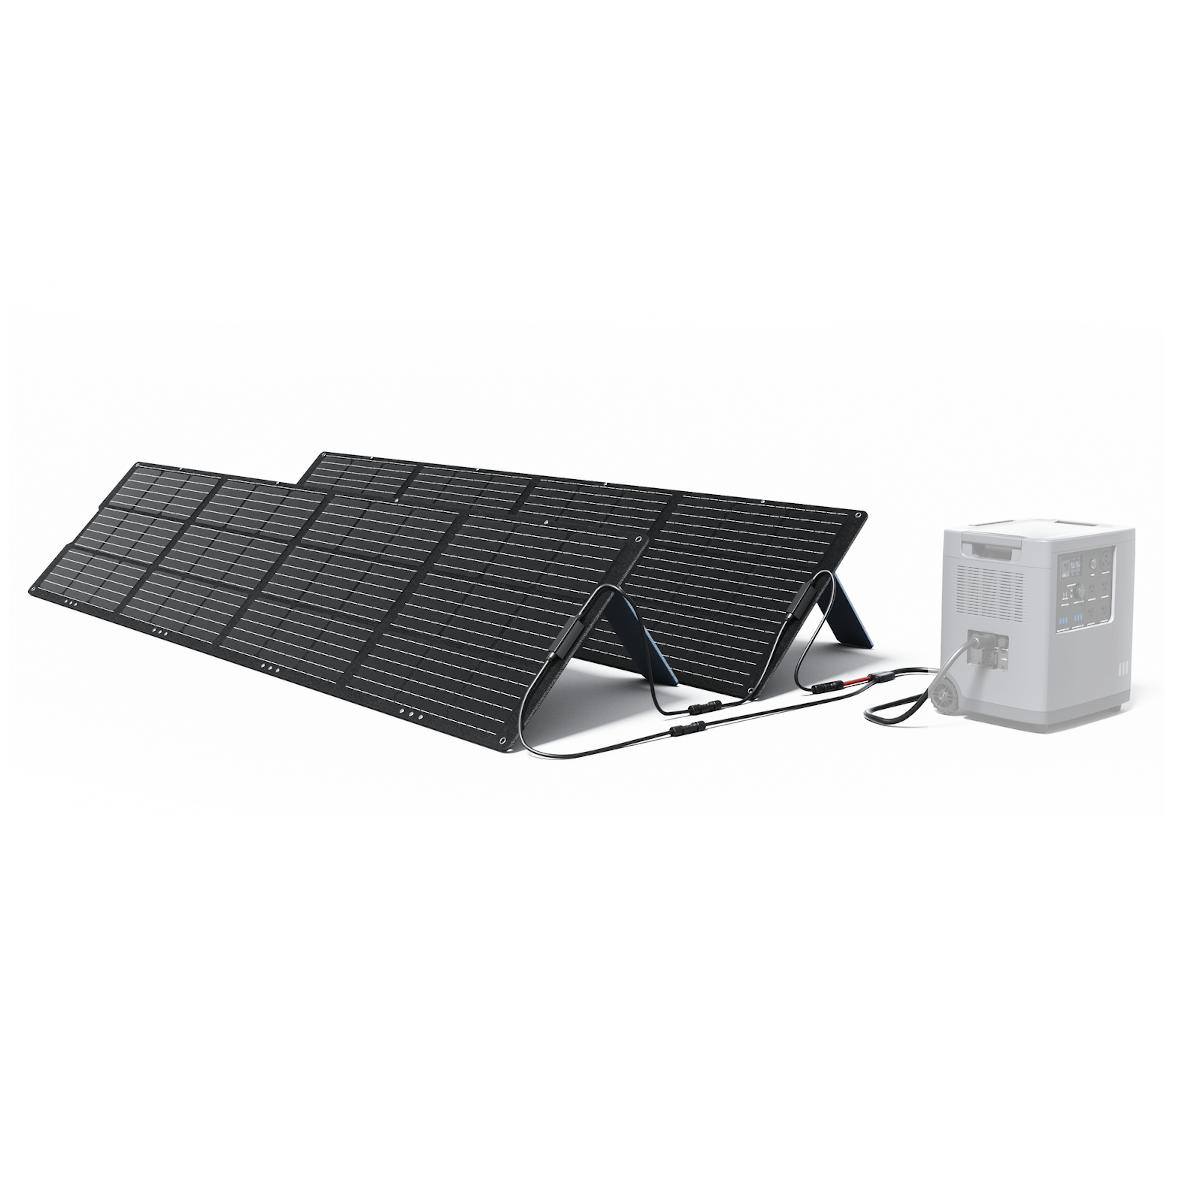 [EU Direto] 2Pcs / Set Painel Solar Portátil Dobrável Mango Power 200W Taxa de Conversão Alta de 22% Carregadores Solares Impermeáveis IP67